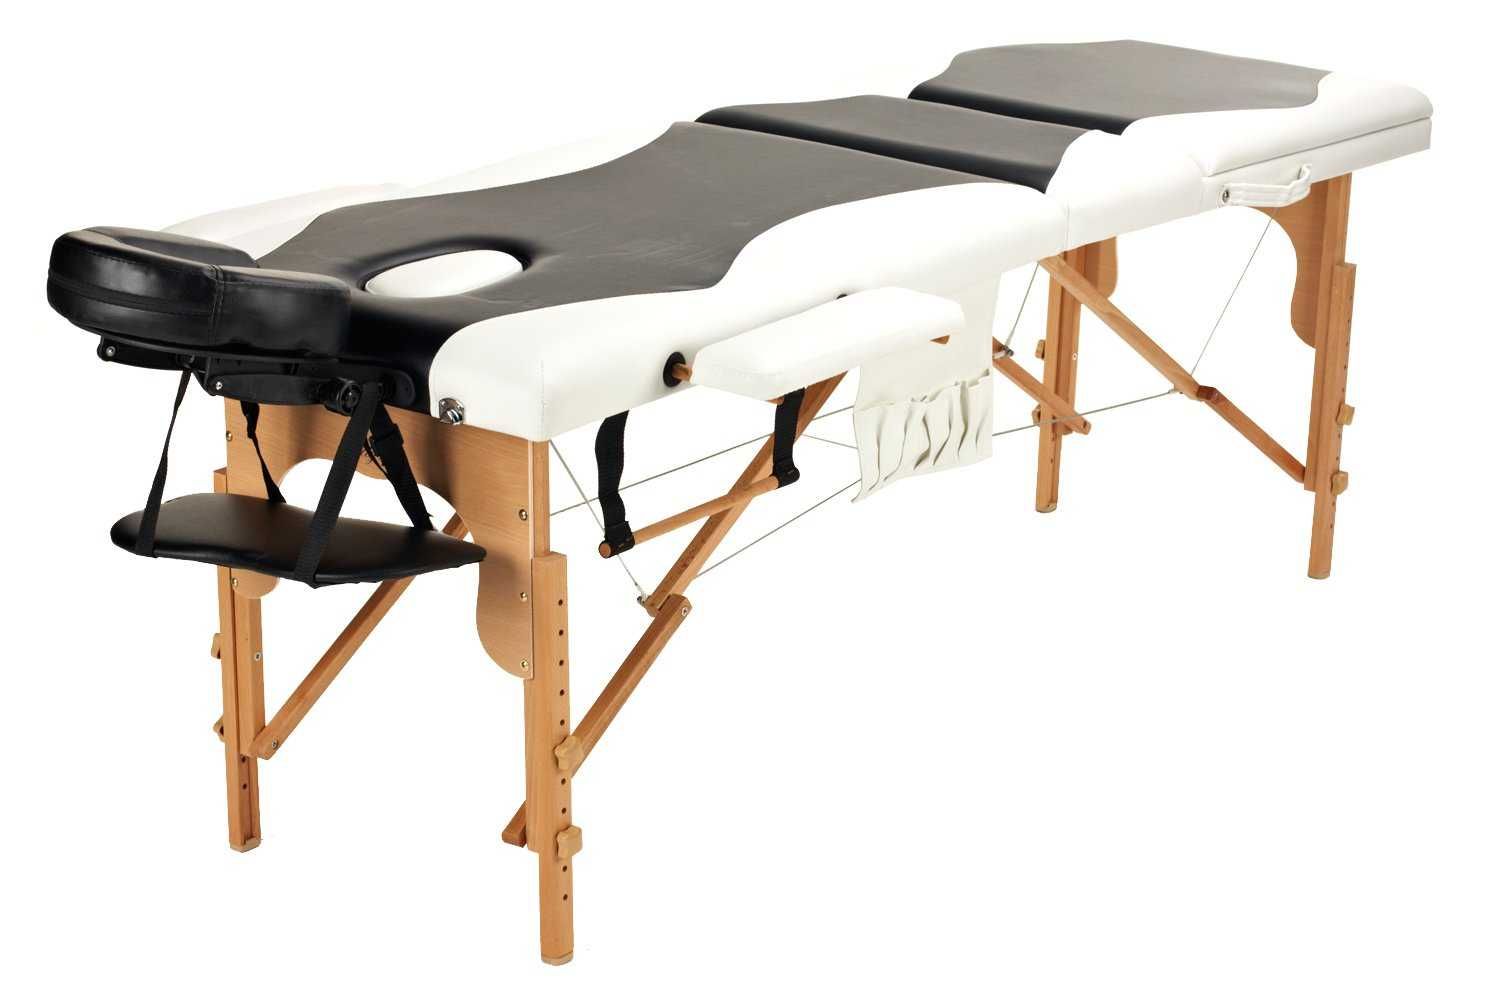 Stół, łóżko do masażu 3-segmentowe drewniane dwukolorowe